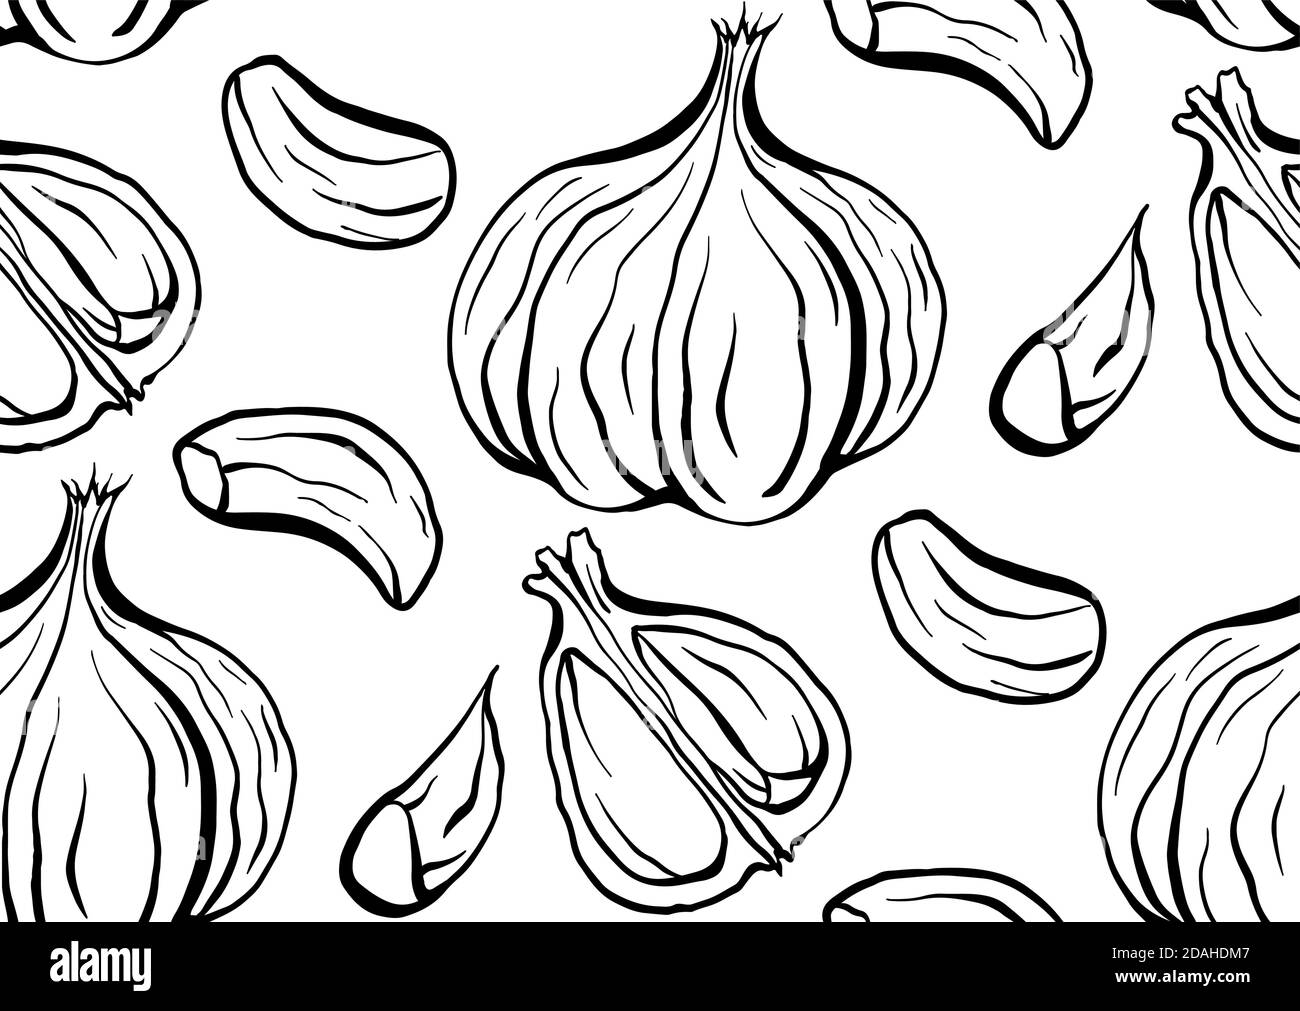 Nahtlose Muster Skizze skizzieren Knoblauch Illustration. Antibakterielles Produkt für die Gesundheit. Nützliche Gewürzmischung zum Kochen. Natürliche Würze. Vektorstruktur für Stock Vektor